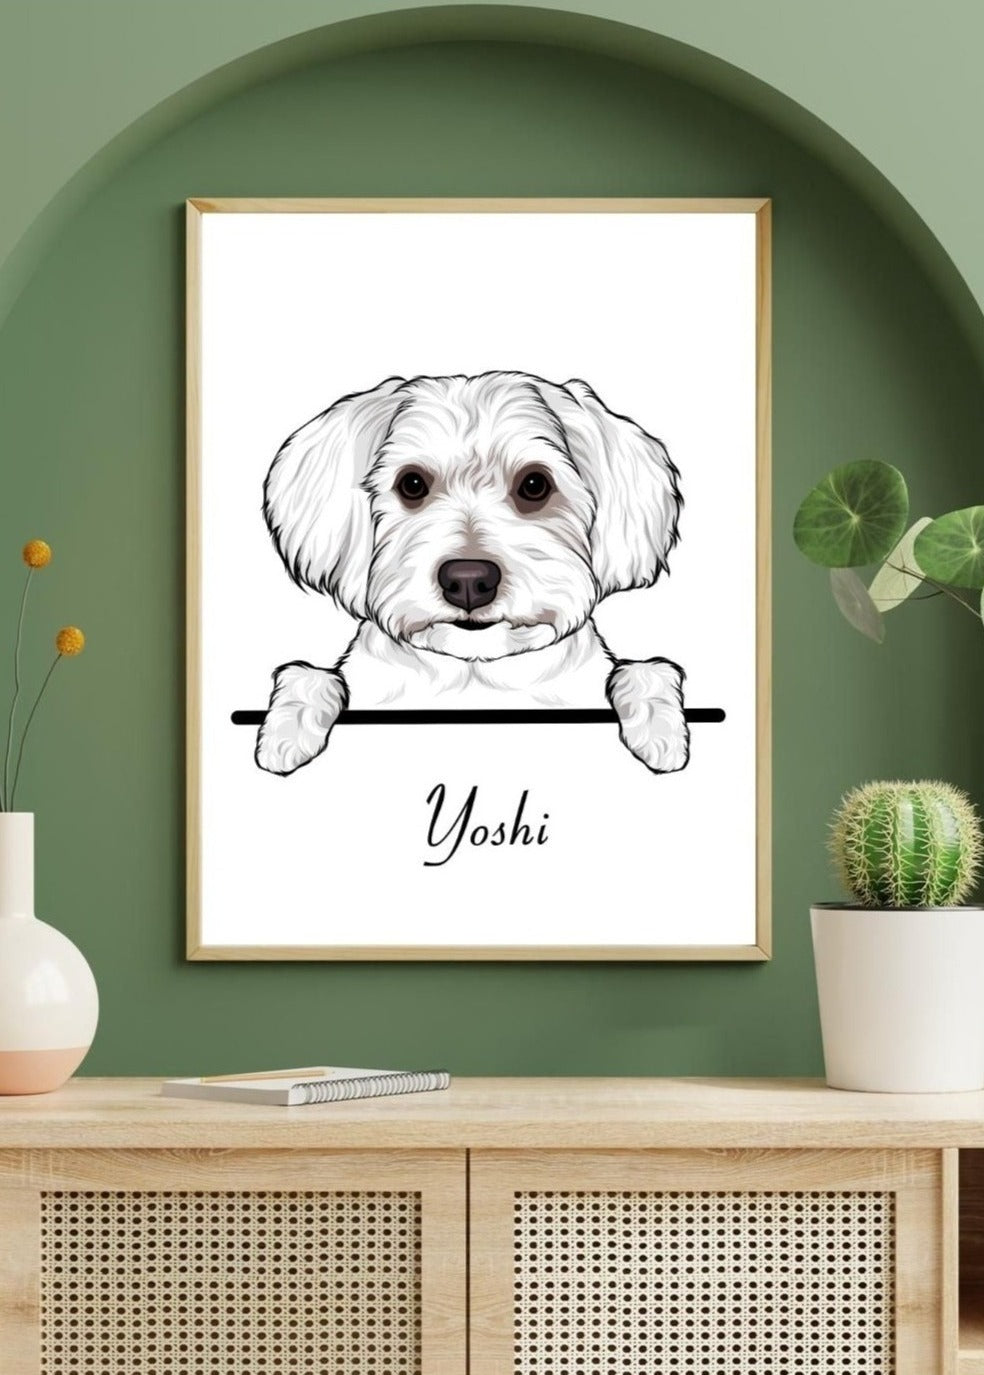 Elegant gerahmtes personalisiertes Hunde Poster über einer Kommode, stilvoll integriert in eine moderne Wohnzimmereinrichtung.